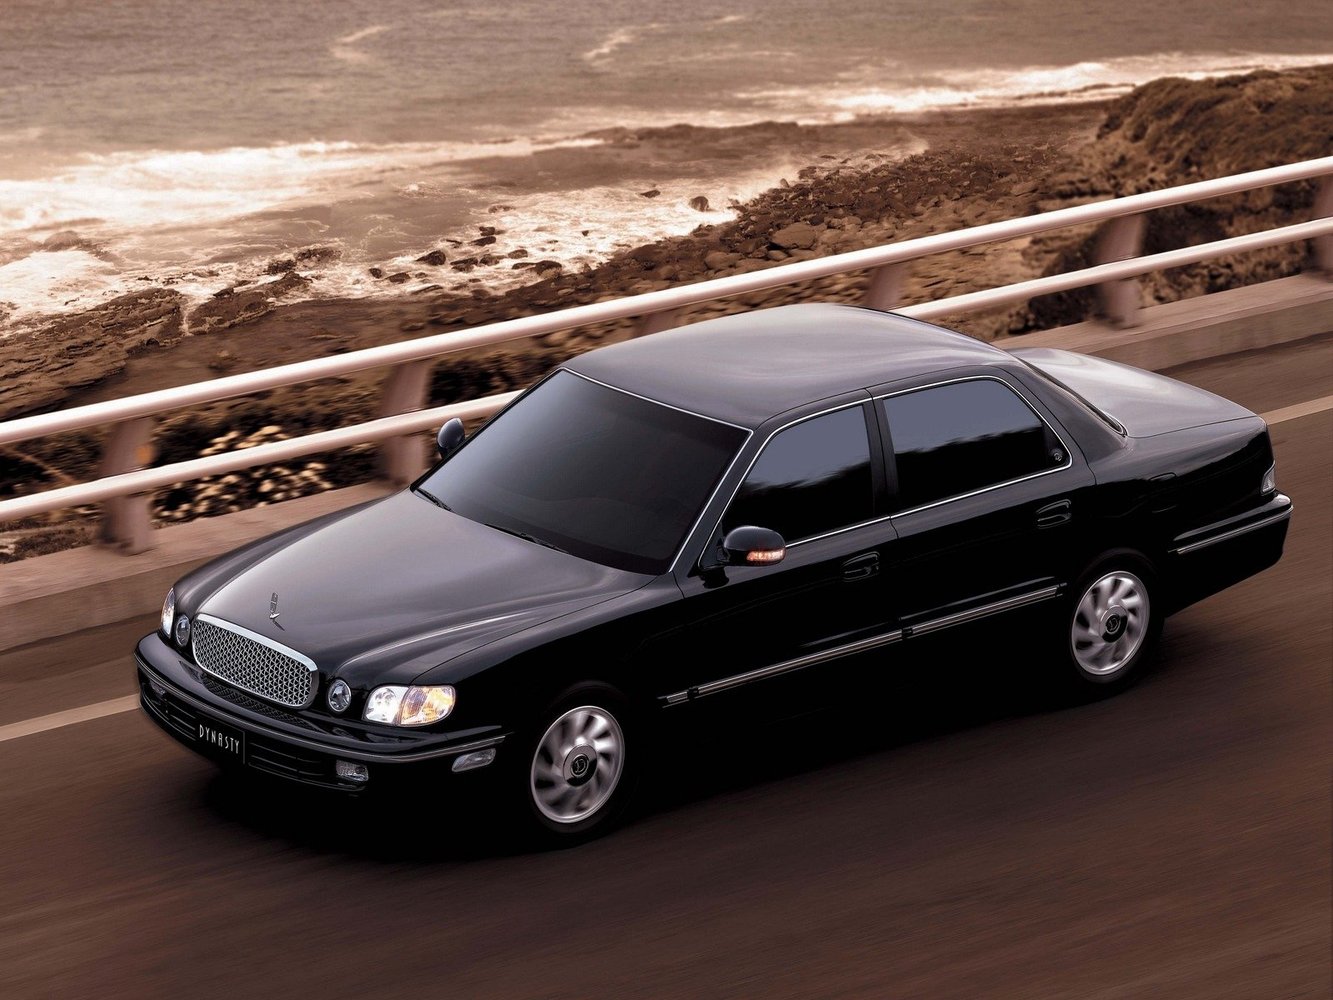 седан Hyundai Dynasty 1996 - 2005г выпуска модификация 2.5 AT (173 л.с.)